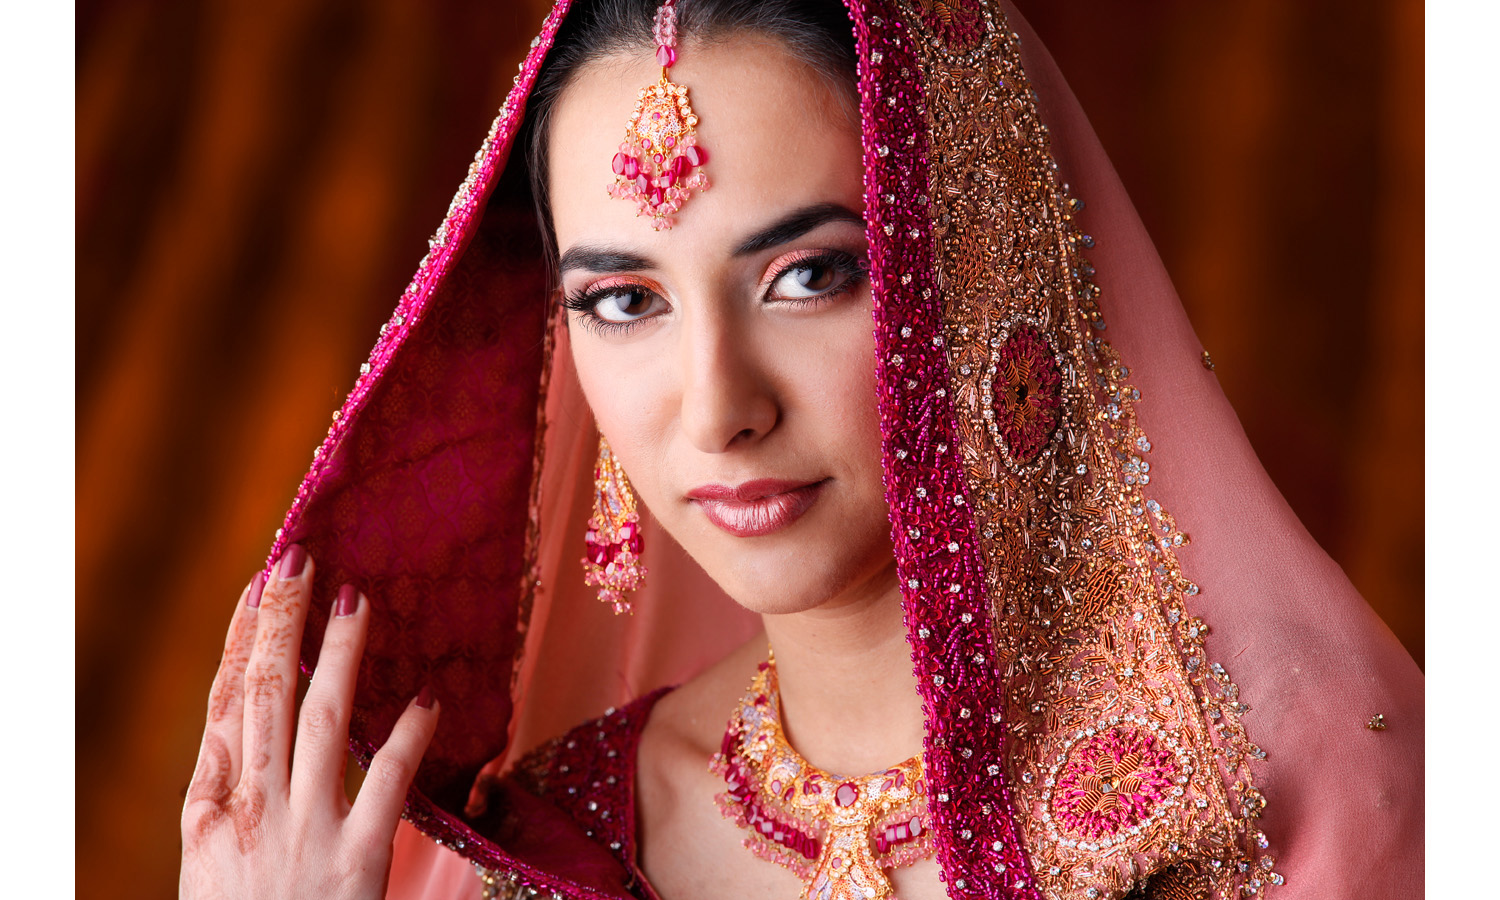 Indian beauty portrait